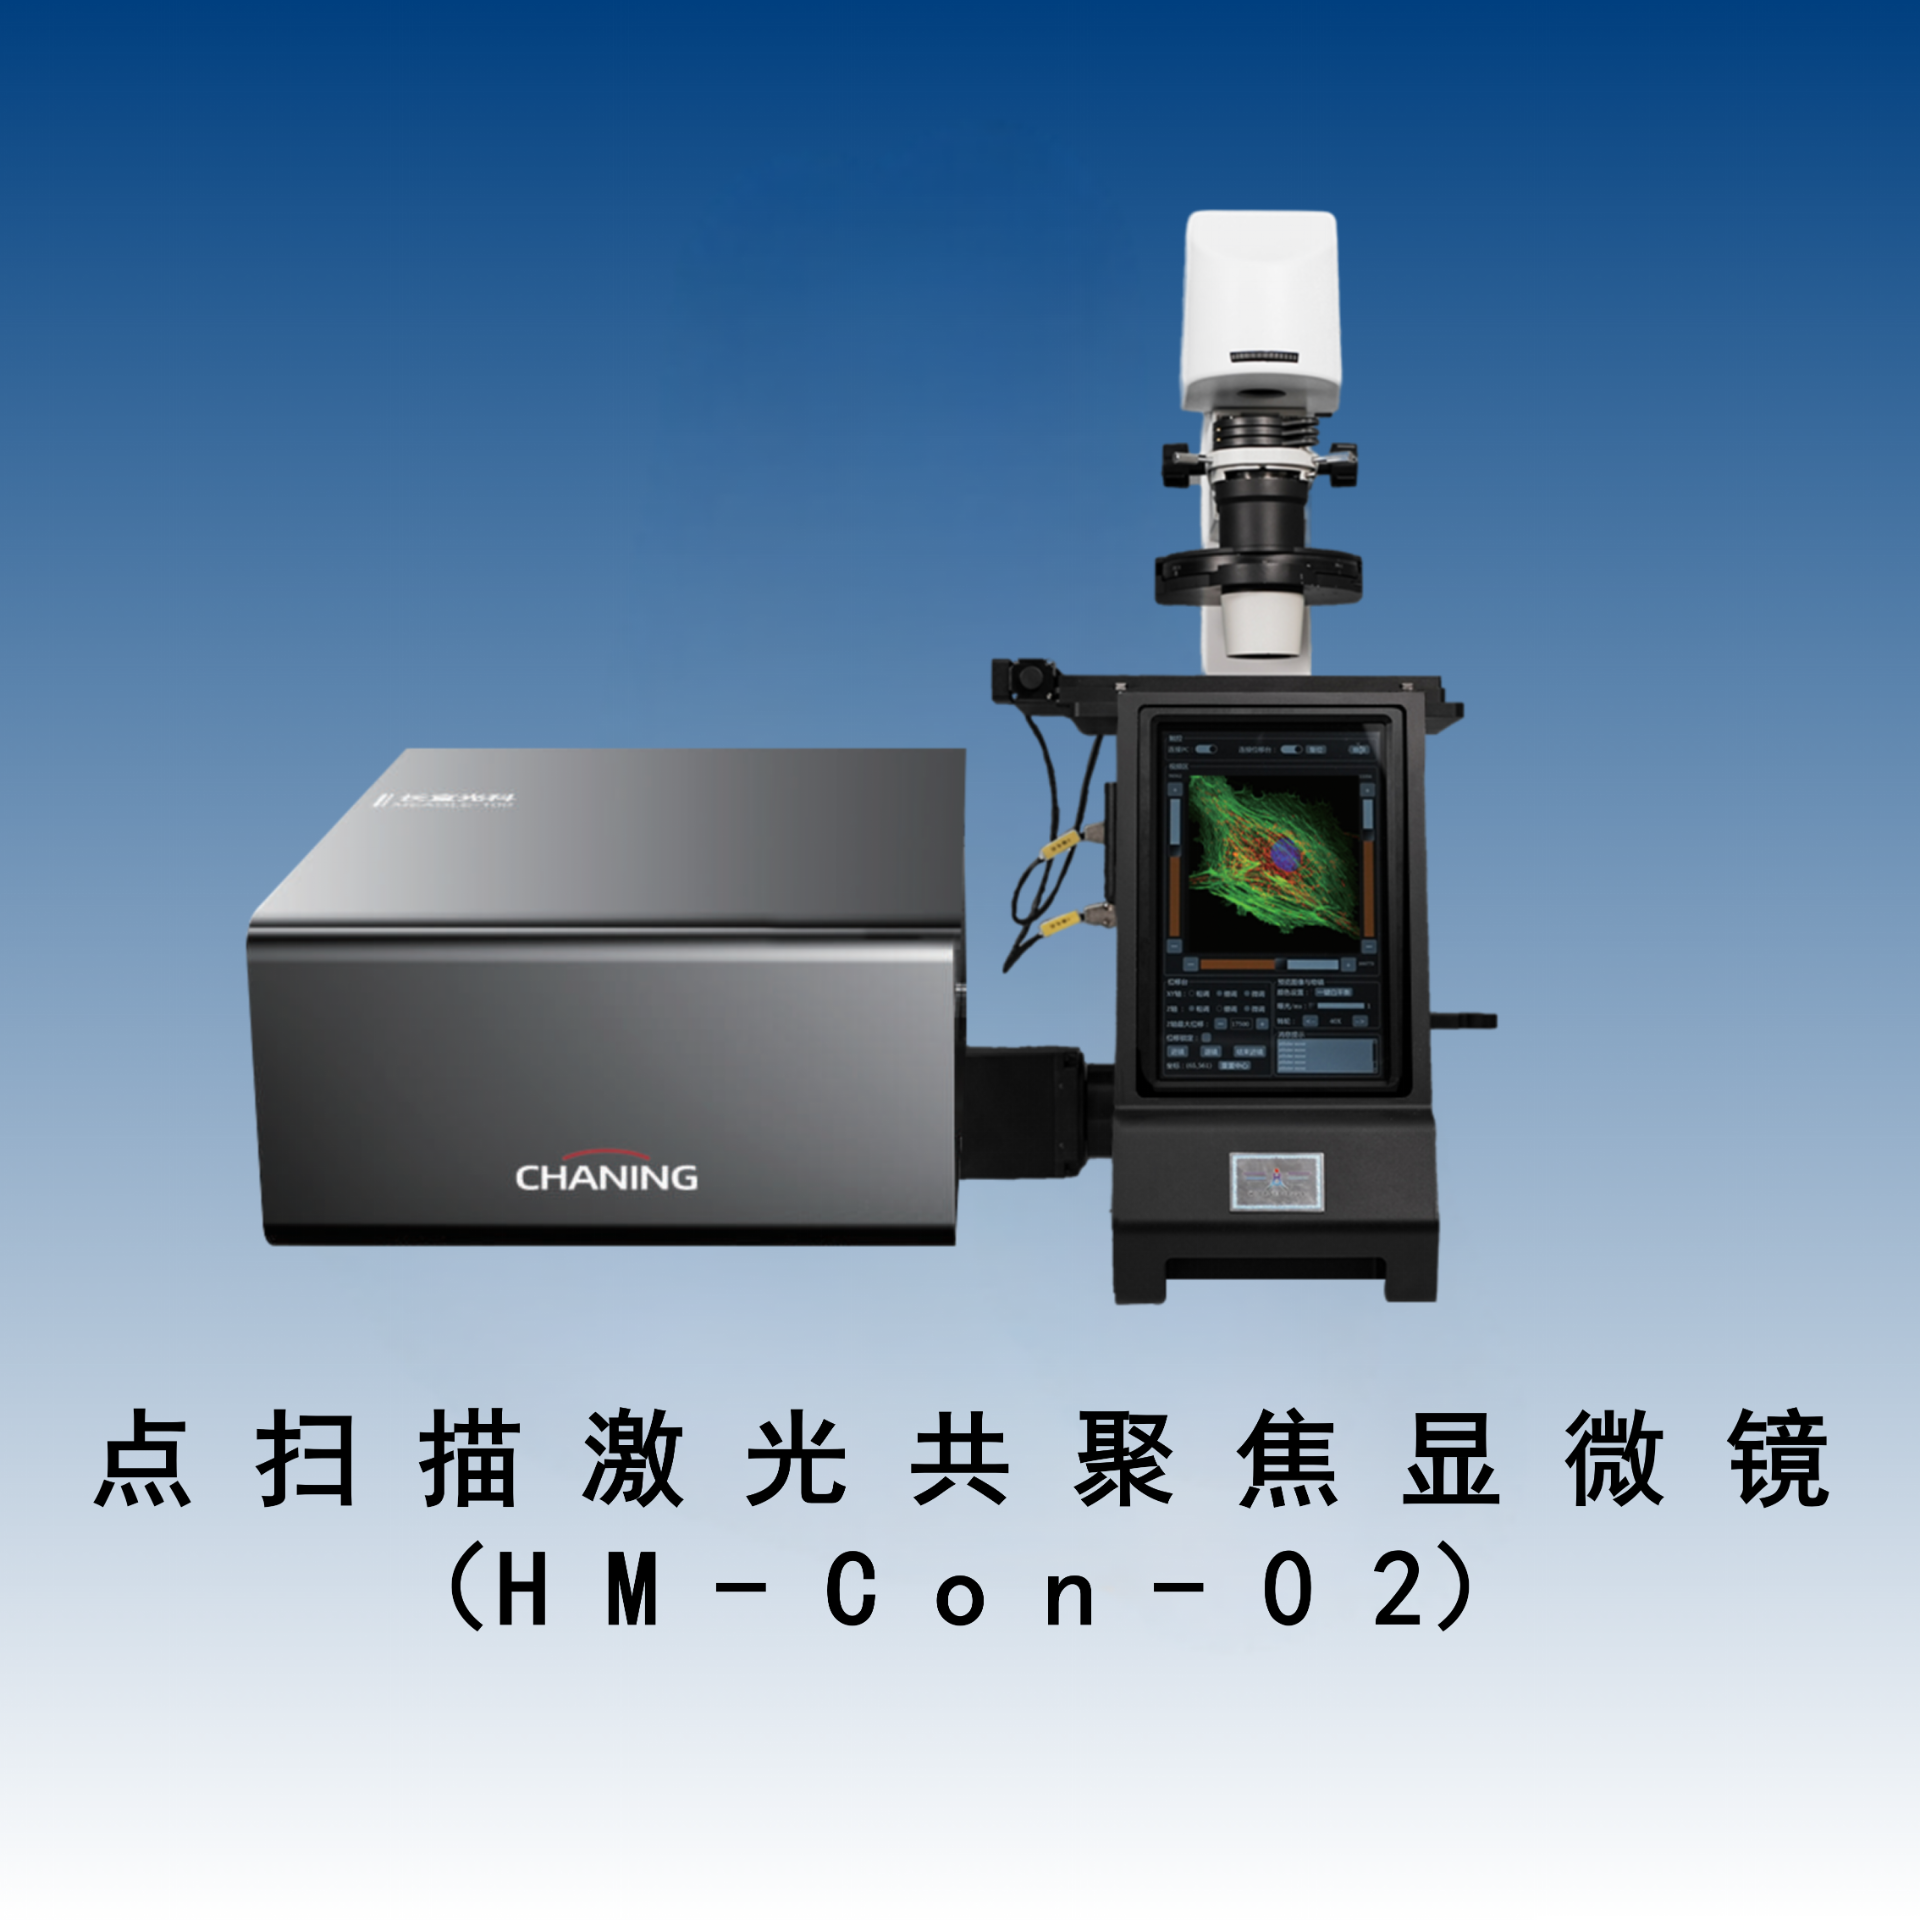 点扫描激光共聚焦显微镜（HM-Con-02）